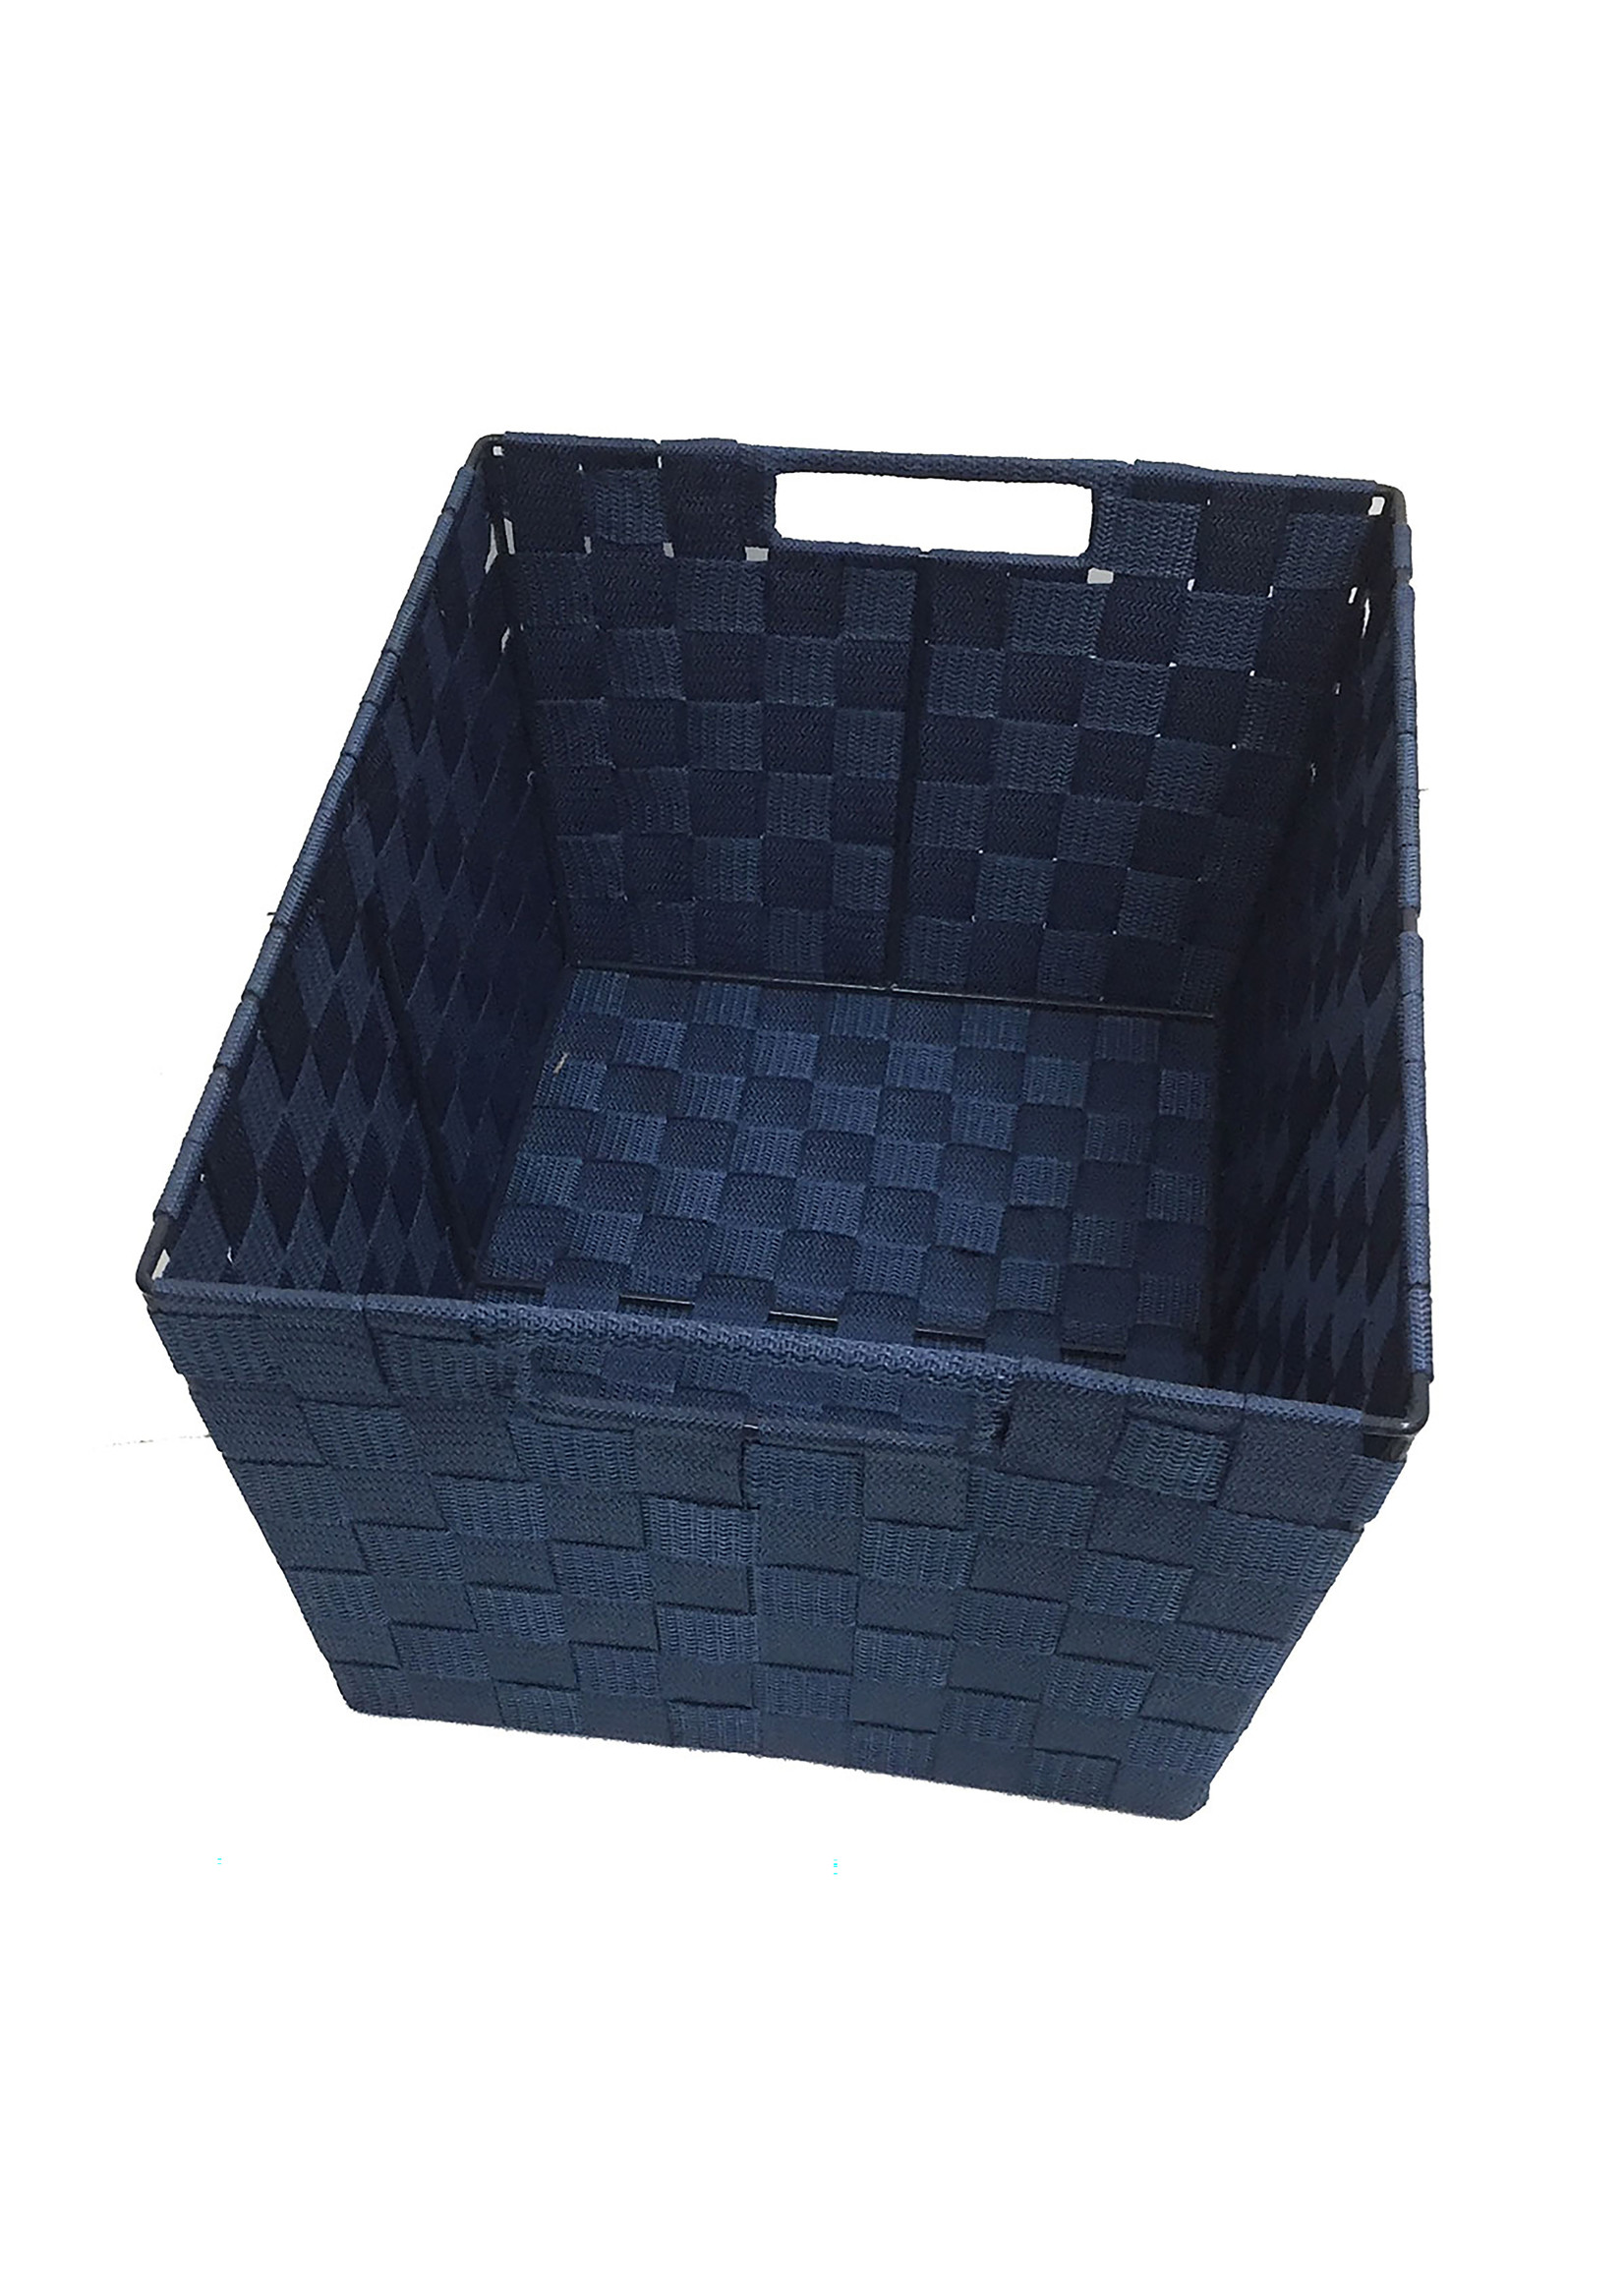 ITY INTERNATIONAL Large Navy Blue Single Nylon Storage Basket